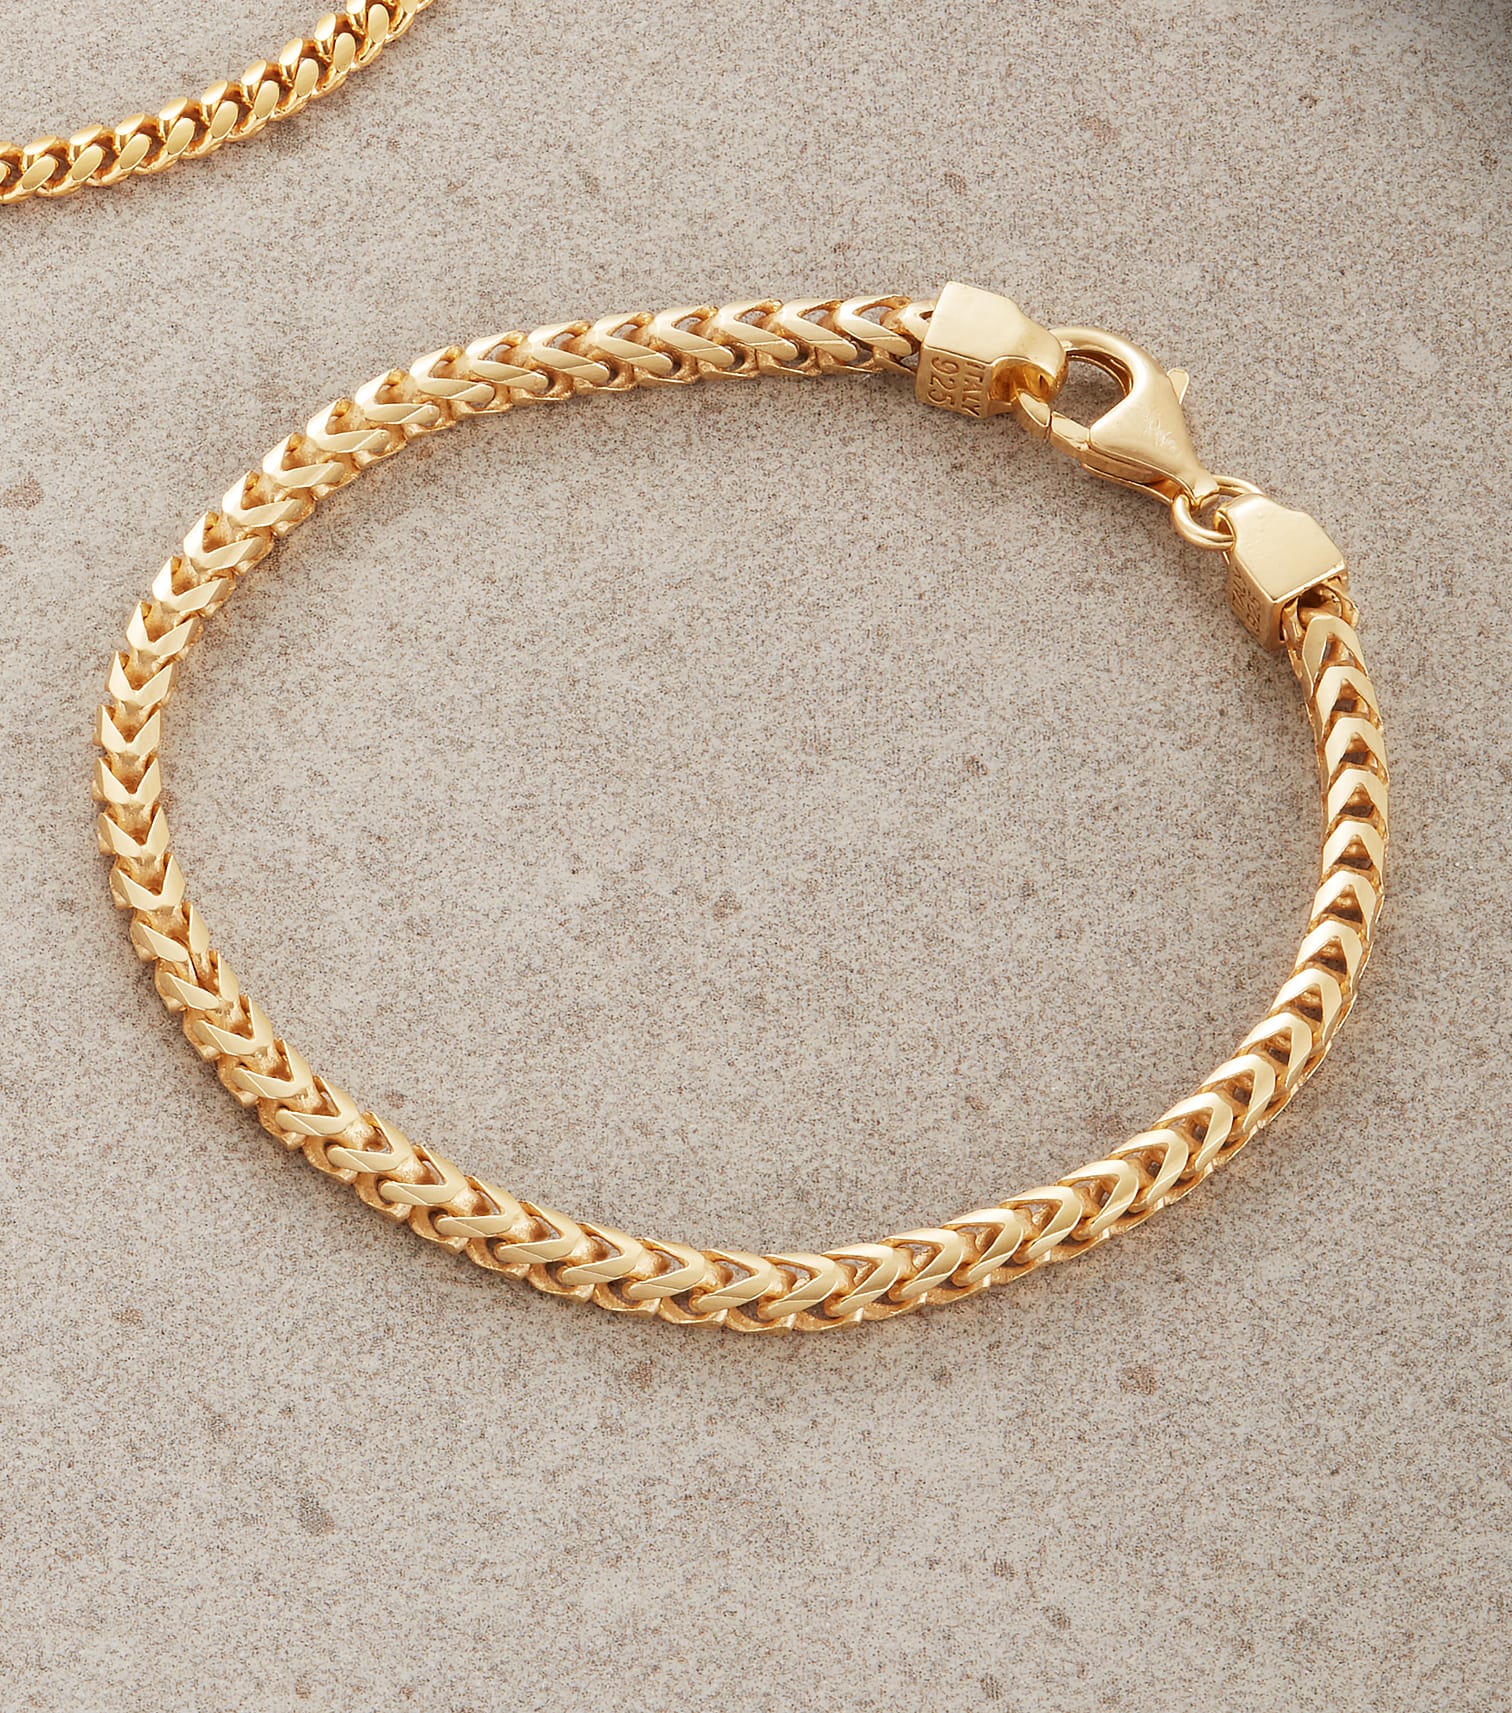 Image Cuban + Franco Bracelet Stack - Gold - Higher Quality Standards